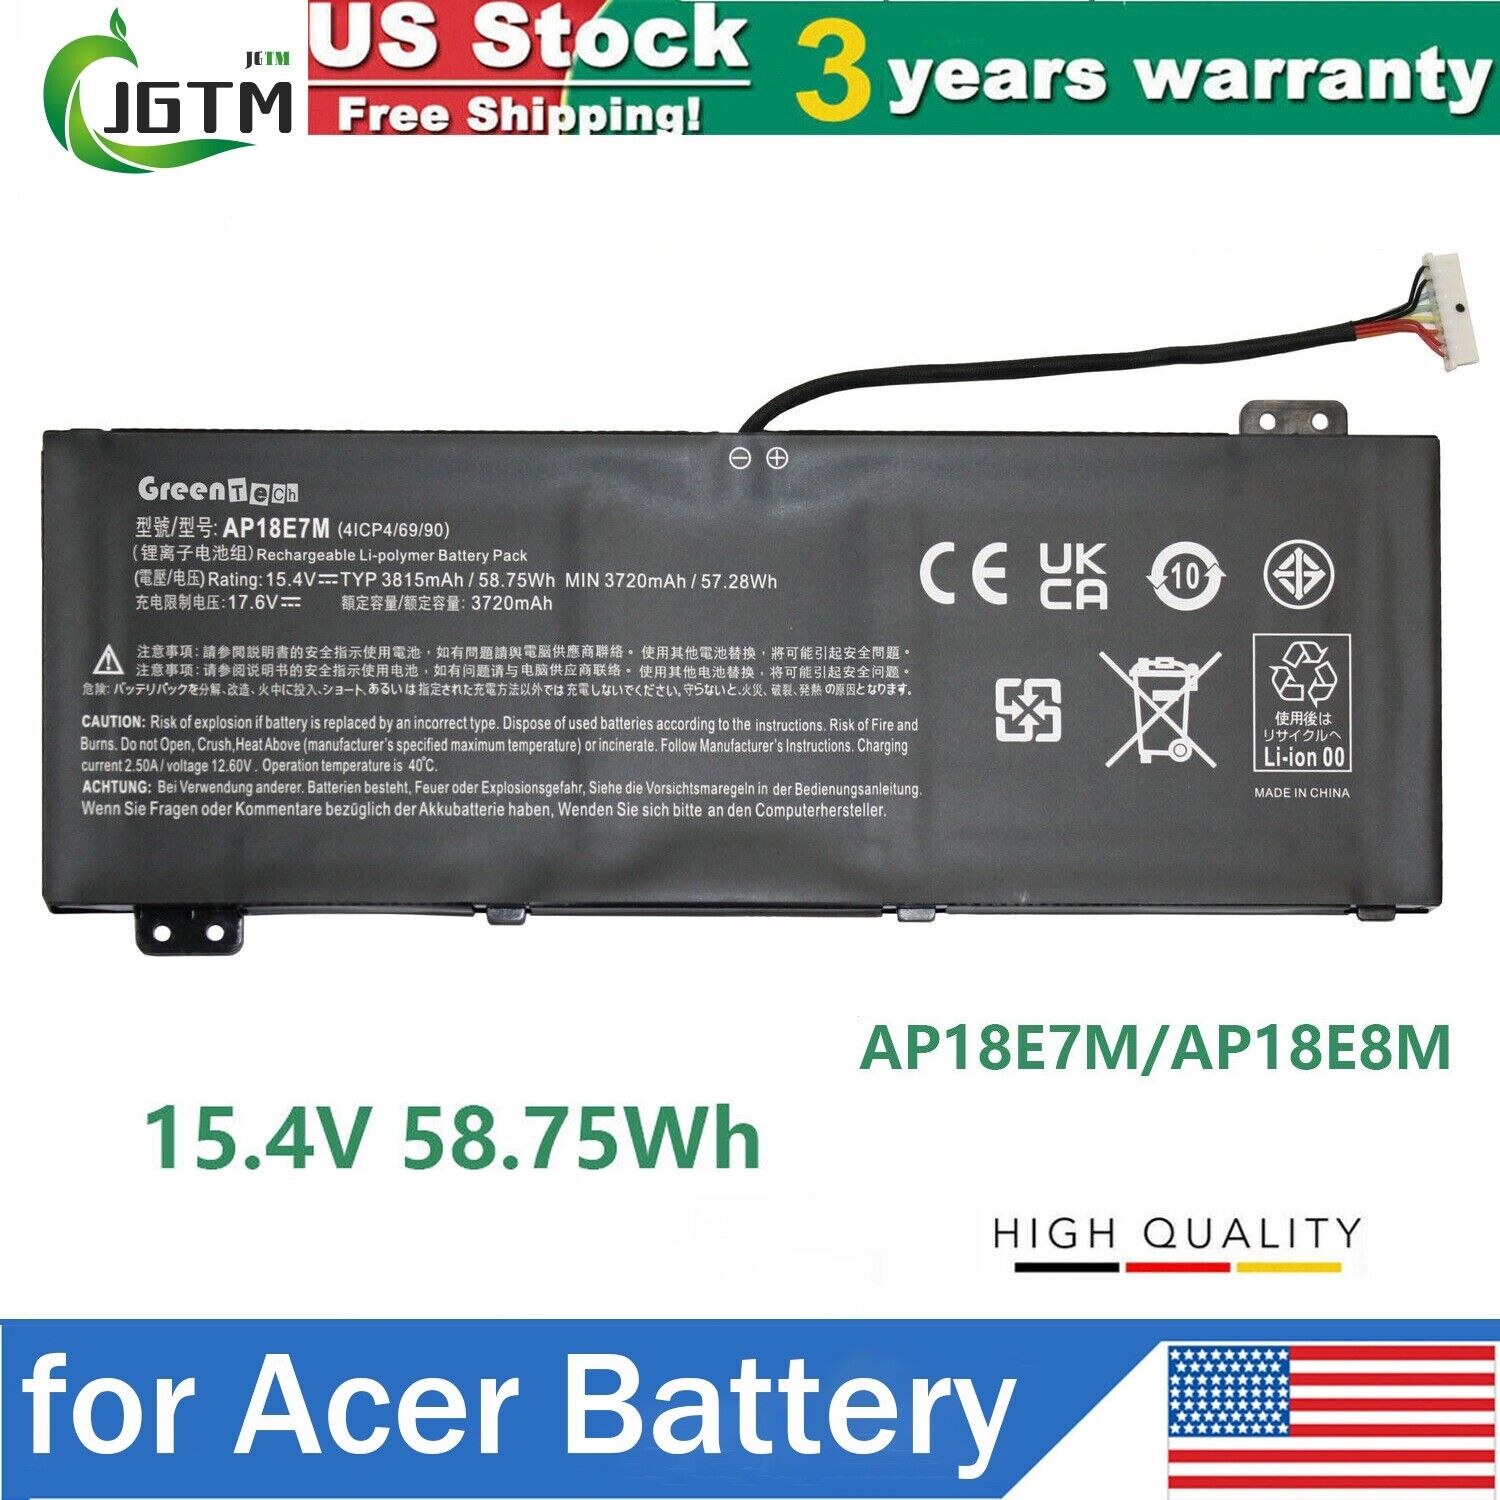 AP18E7M AP18E8M Battery for Acer Nitro 5 AN515-52 AN515-54 AN515-55 58.75Wh US